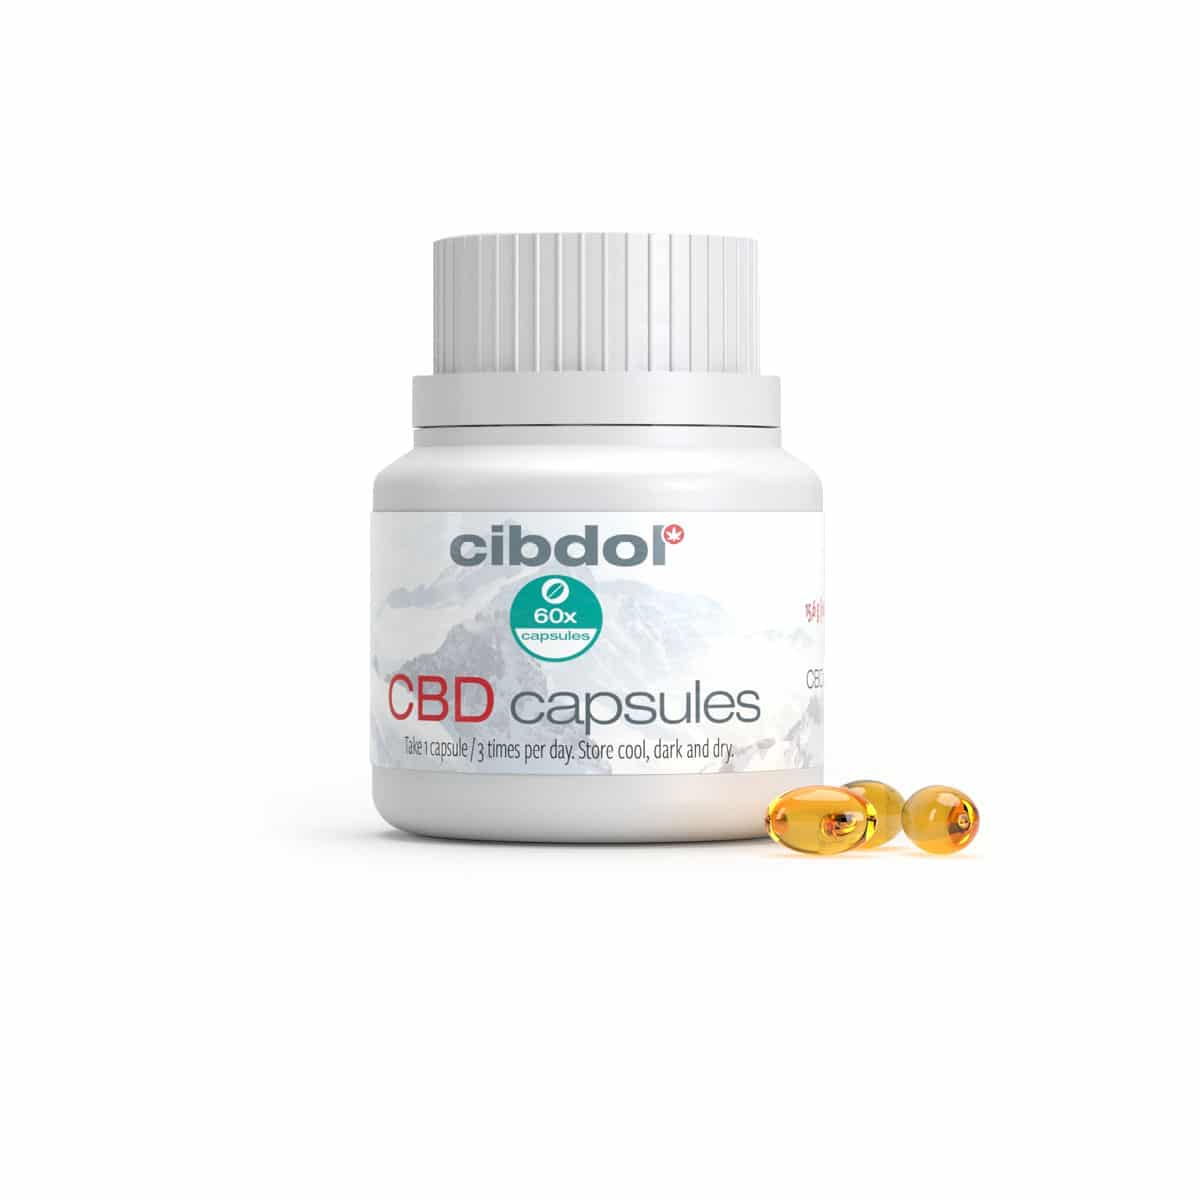 En flaske Cibdol 10% CBD softgel kapsler (60 stk – 16 mg) ved siden af en gul kapsel.